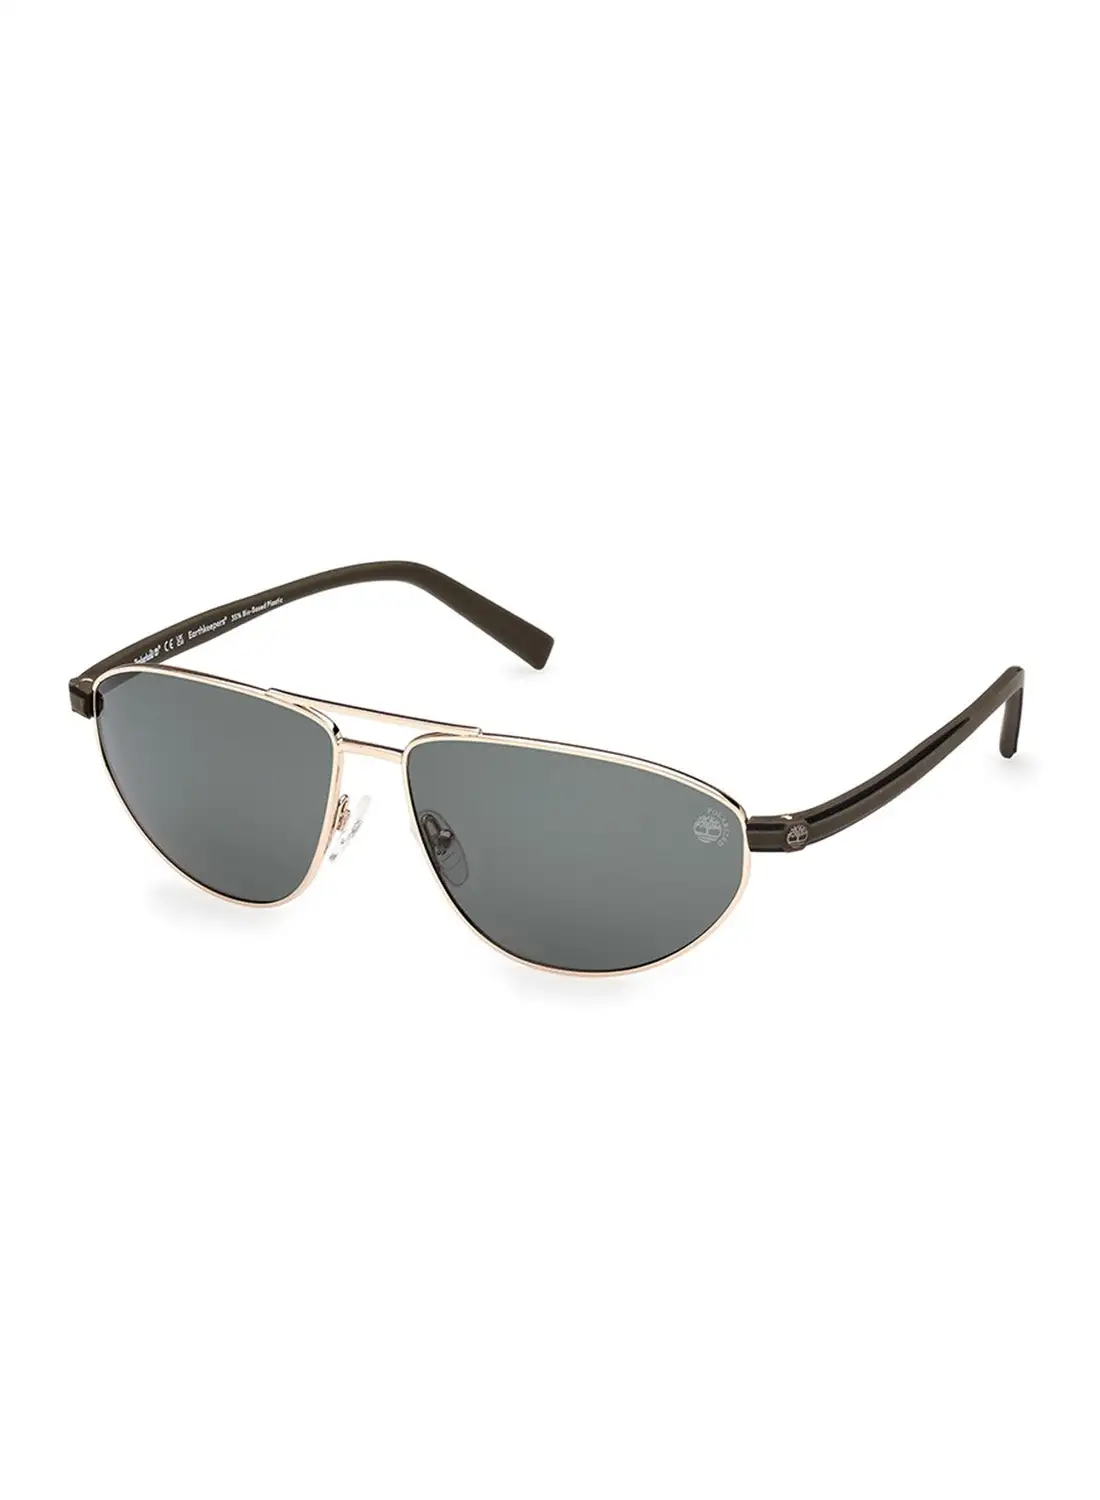 Timberland Men's Polarized Navigator Shape Sunglasses - TB932432R62 - Lens Size: 62 Mm